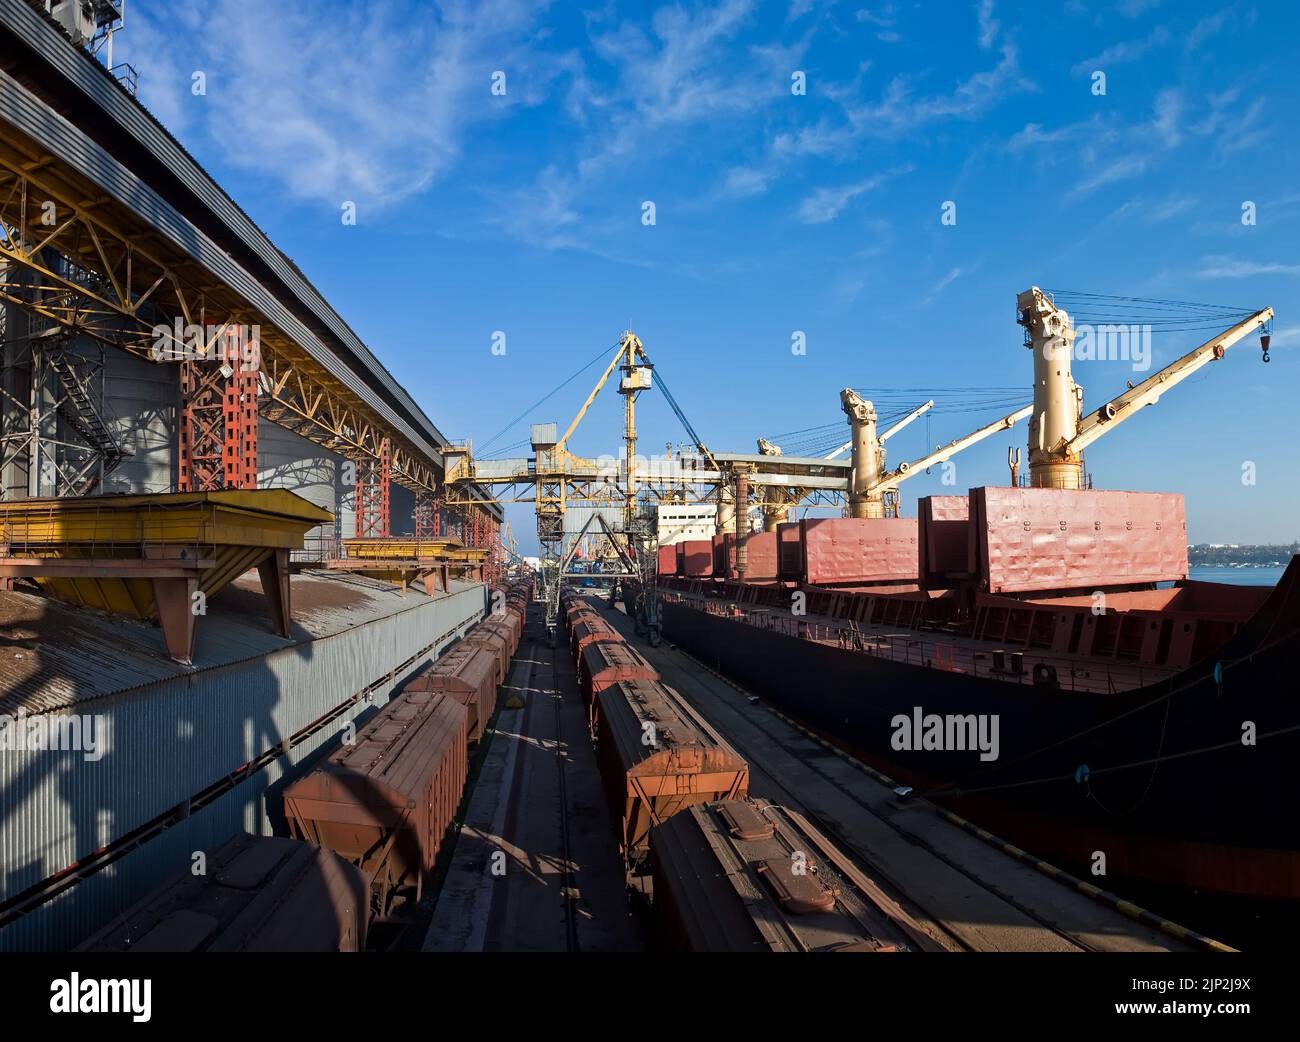 Verladung von Getreide in Laderäume von Seefrachtschiffen im Seehafen aus Getreidelagerung. Stockfoto